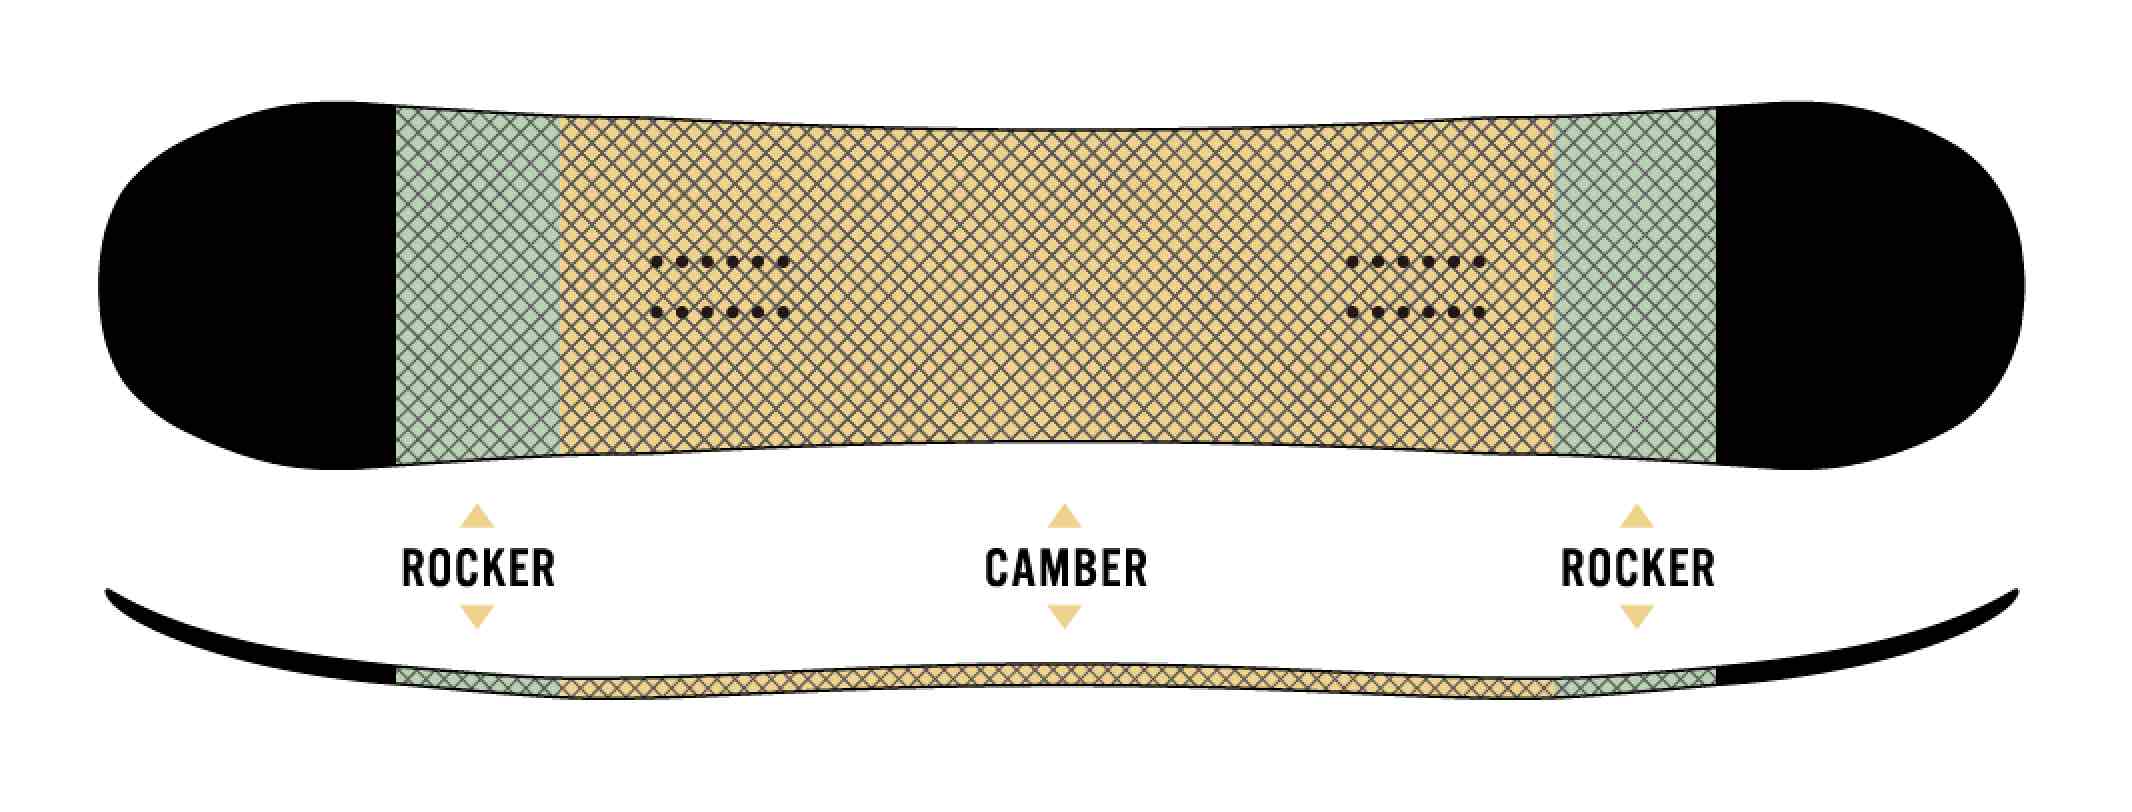 보드의 센터 부분은 캠버로, 코와 테일에 조금만 로커를 도입한 CAMROCK.캠버가 자랑하는 깨끗한 엣지와 높은 반발력, 그리고 로커 특유의 처리의 좋은 점을 아울러 가지고 있다